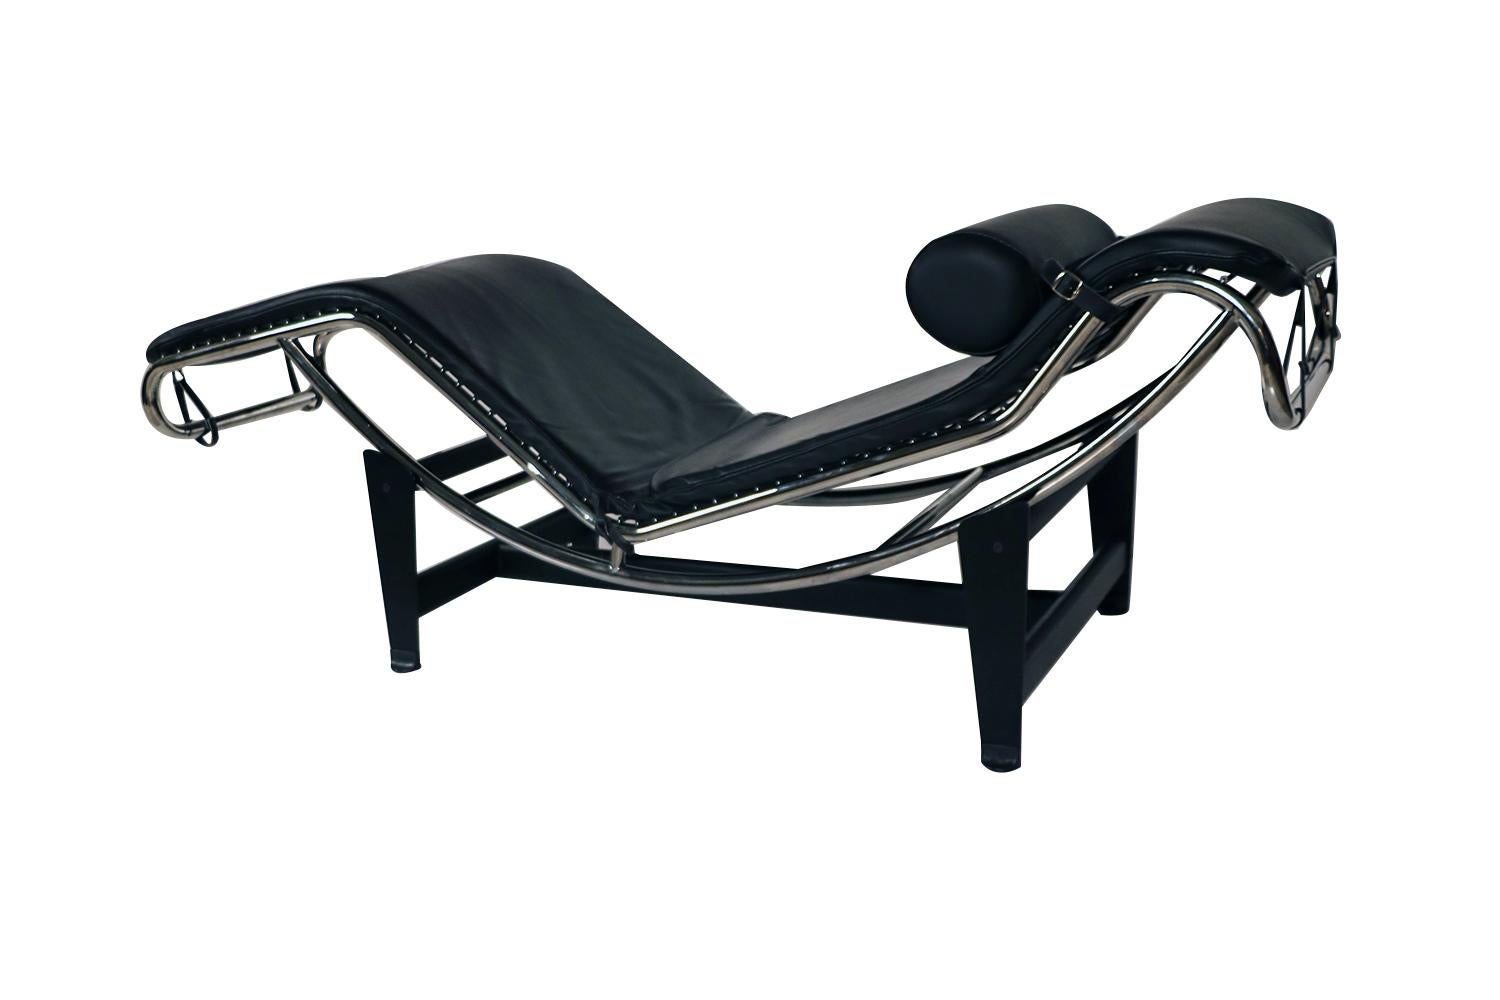 Une magnifique chaise, un salon ou un lit de jour en cuir de style classique Le Corbusier LC4. Cuir de haute qualité, avec intérieur en mousse dense. Il est en deux parties, se soulevant librement de la base en tube d'acier noir chromé, permettant